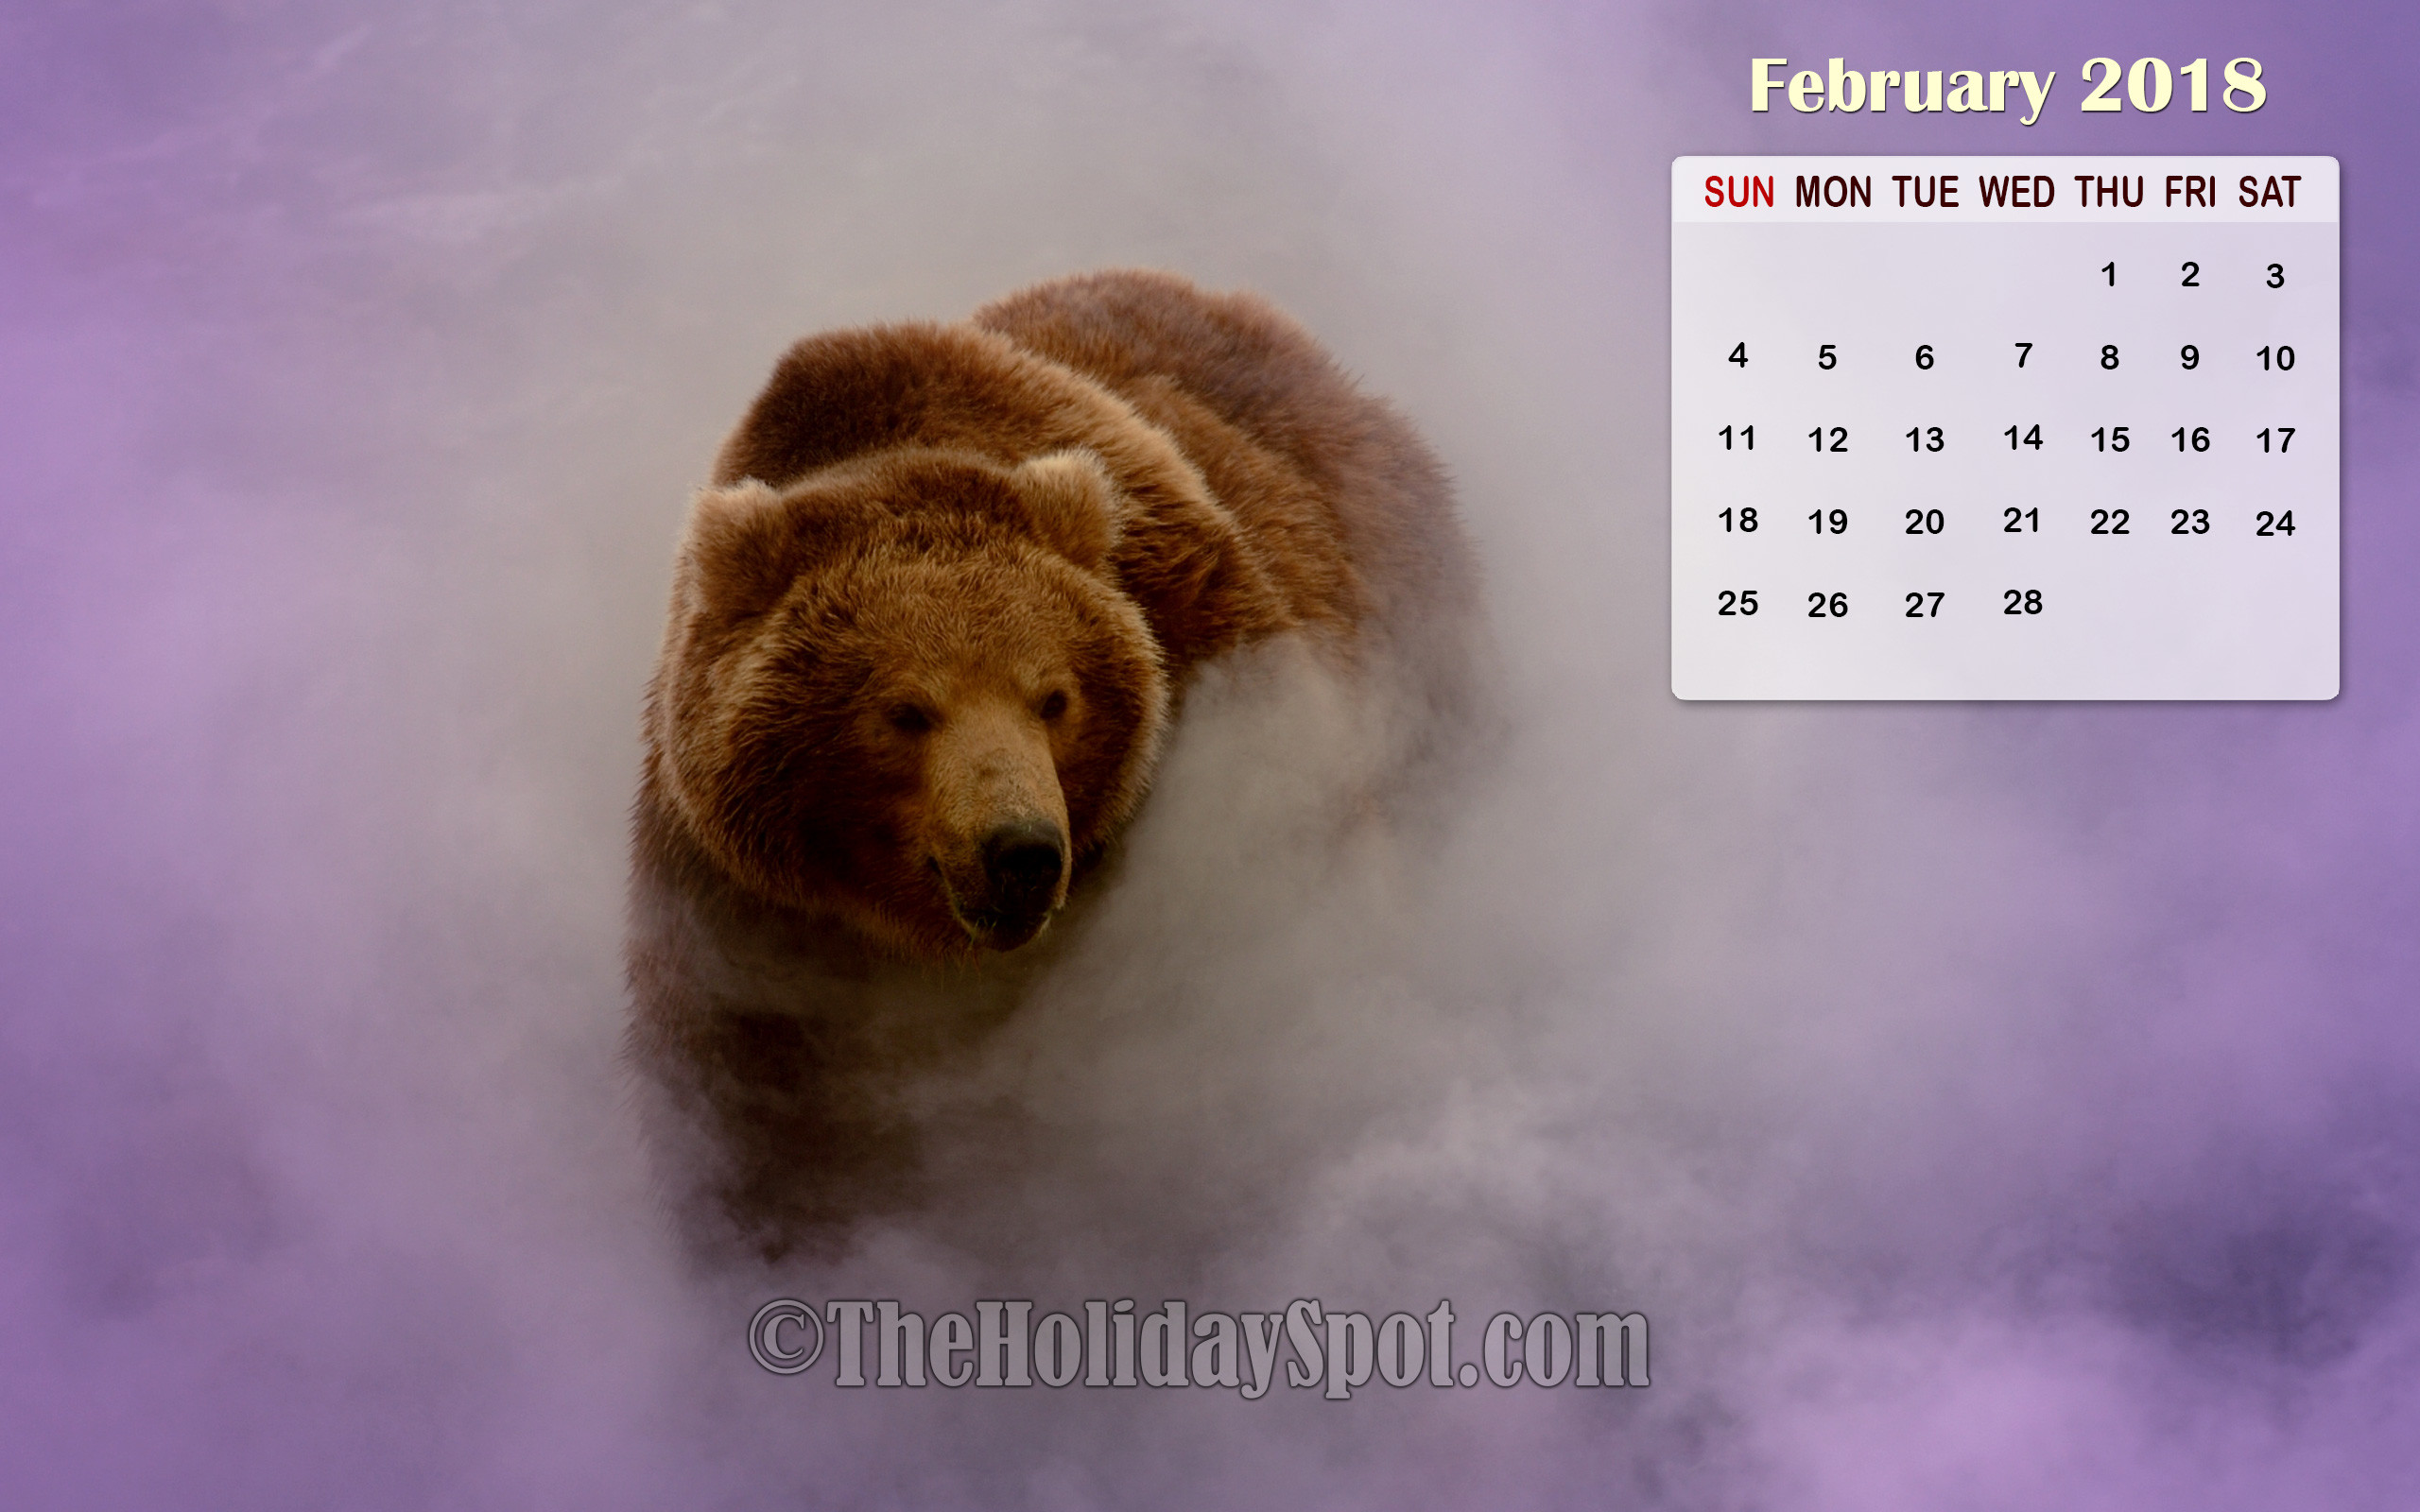 2560x1600 February 2018 Calendar Wallpaper of a bear